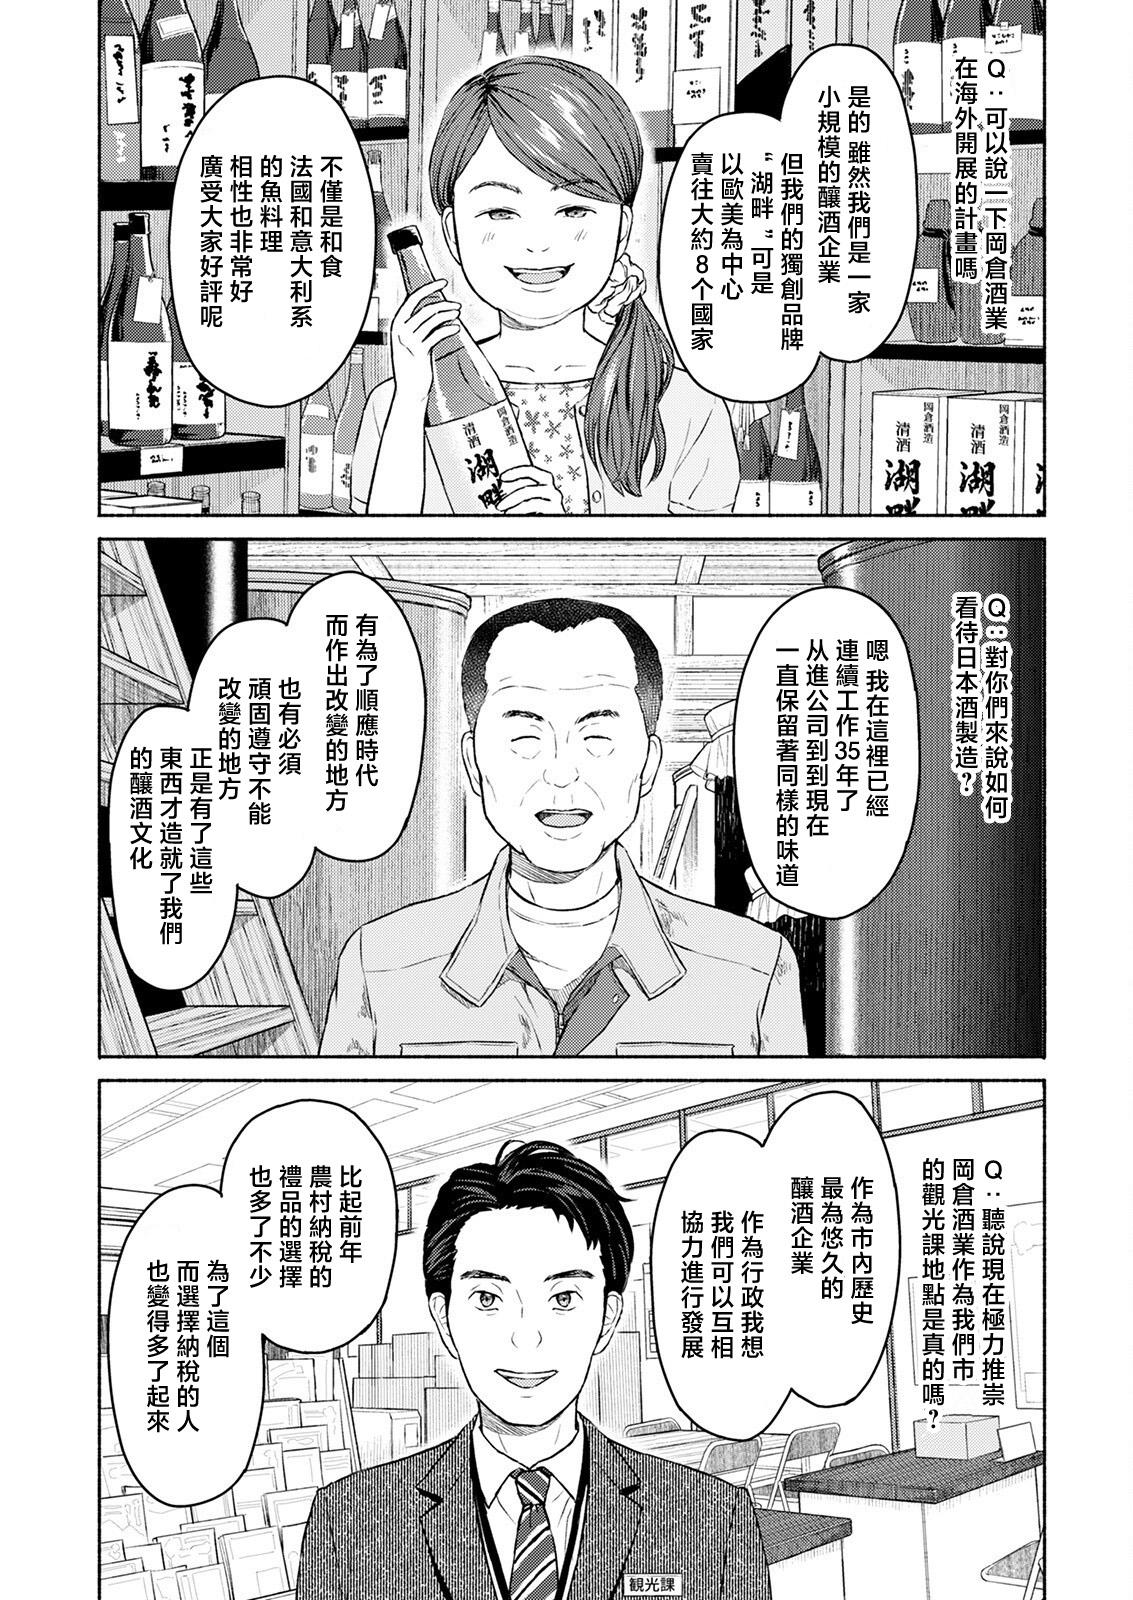 Foreplay Marude Rokugatsu no Kohan o Fuku Kaze no you ni Zenpen Jock - Page 11